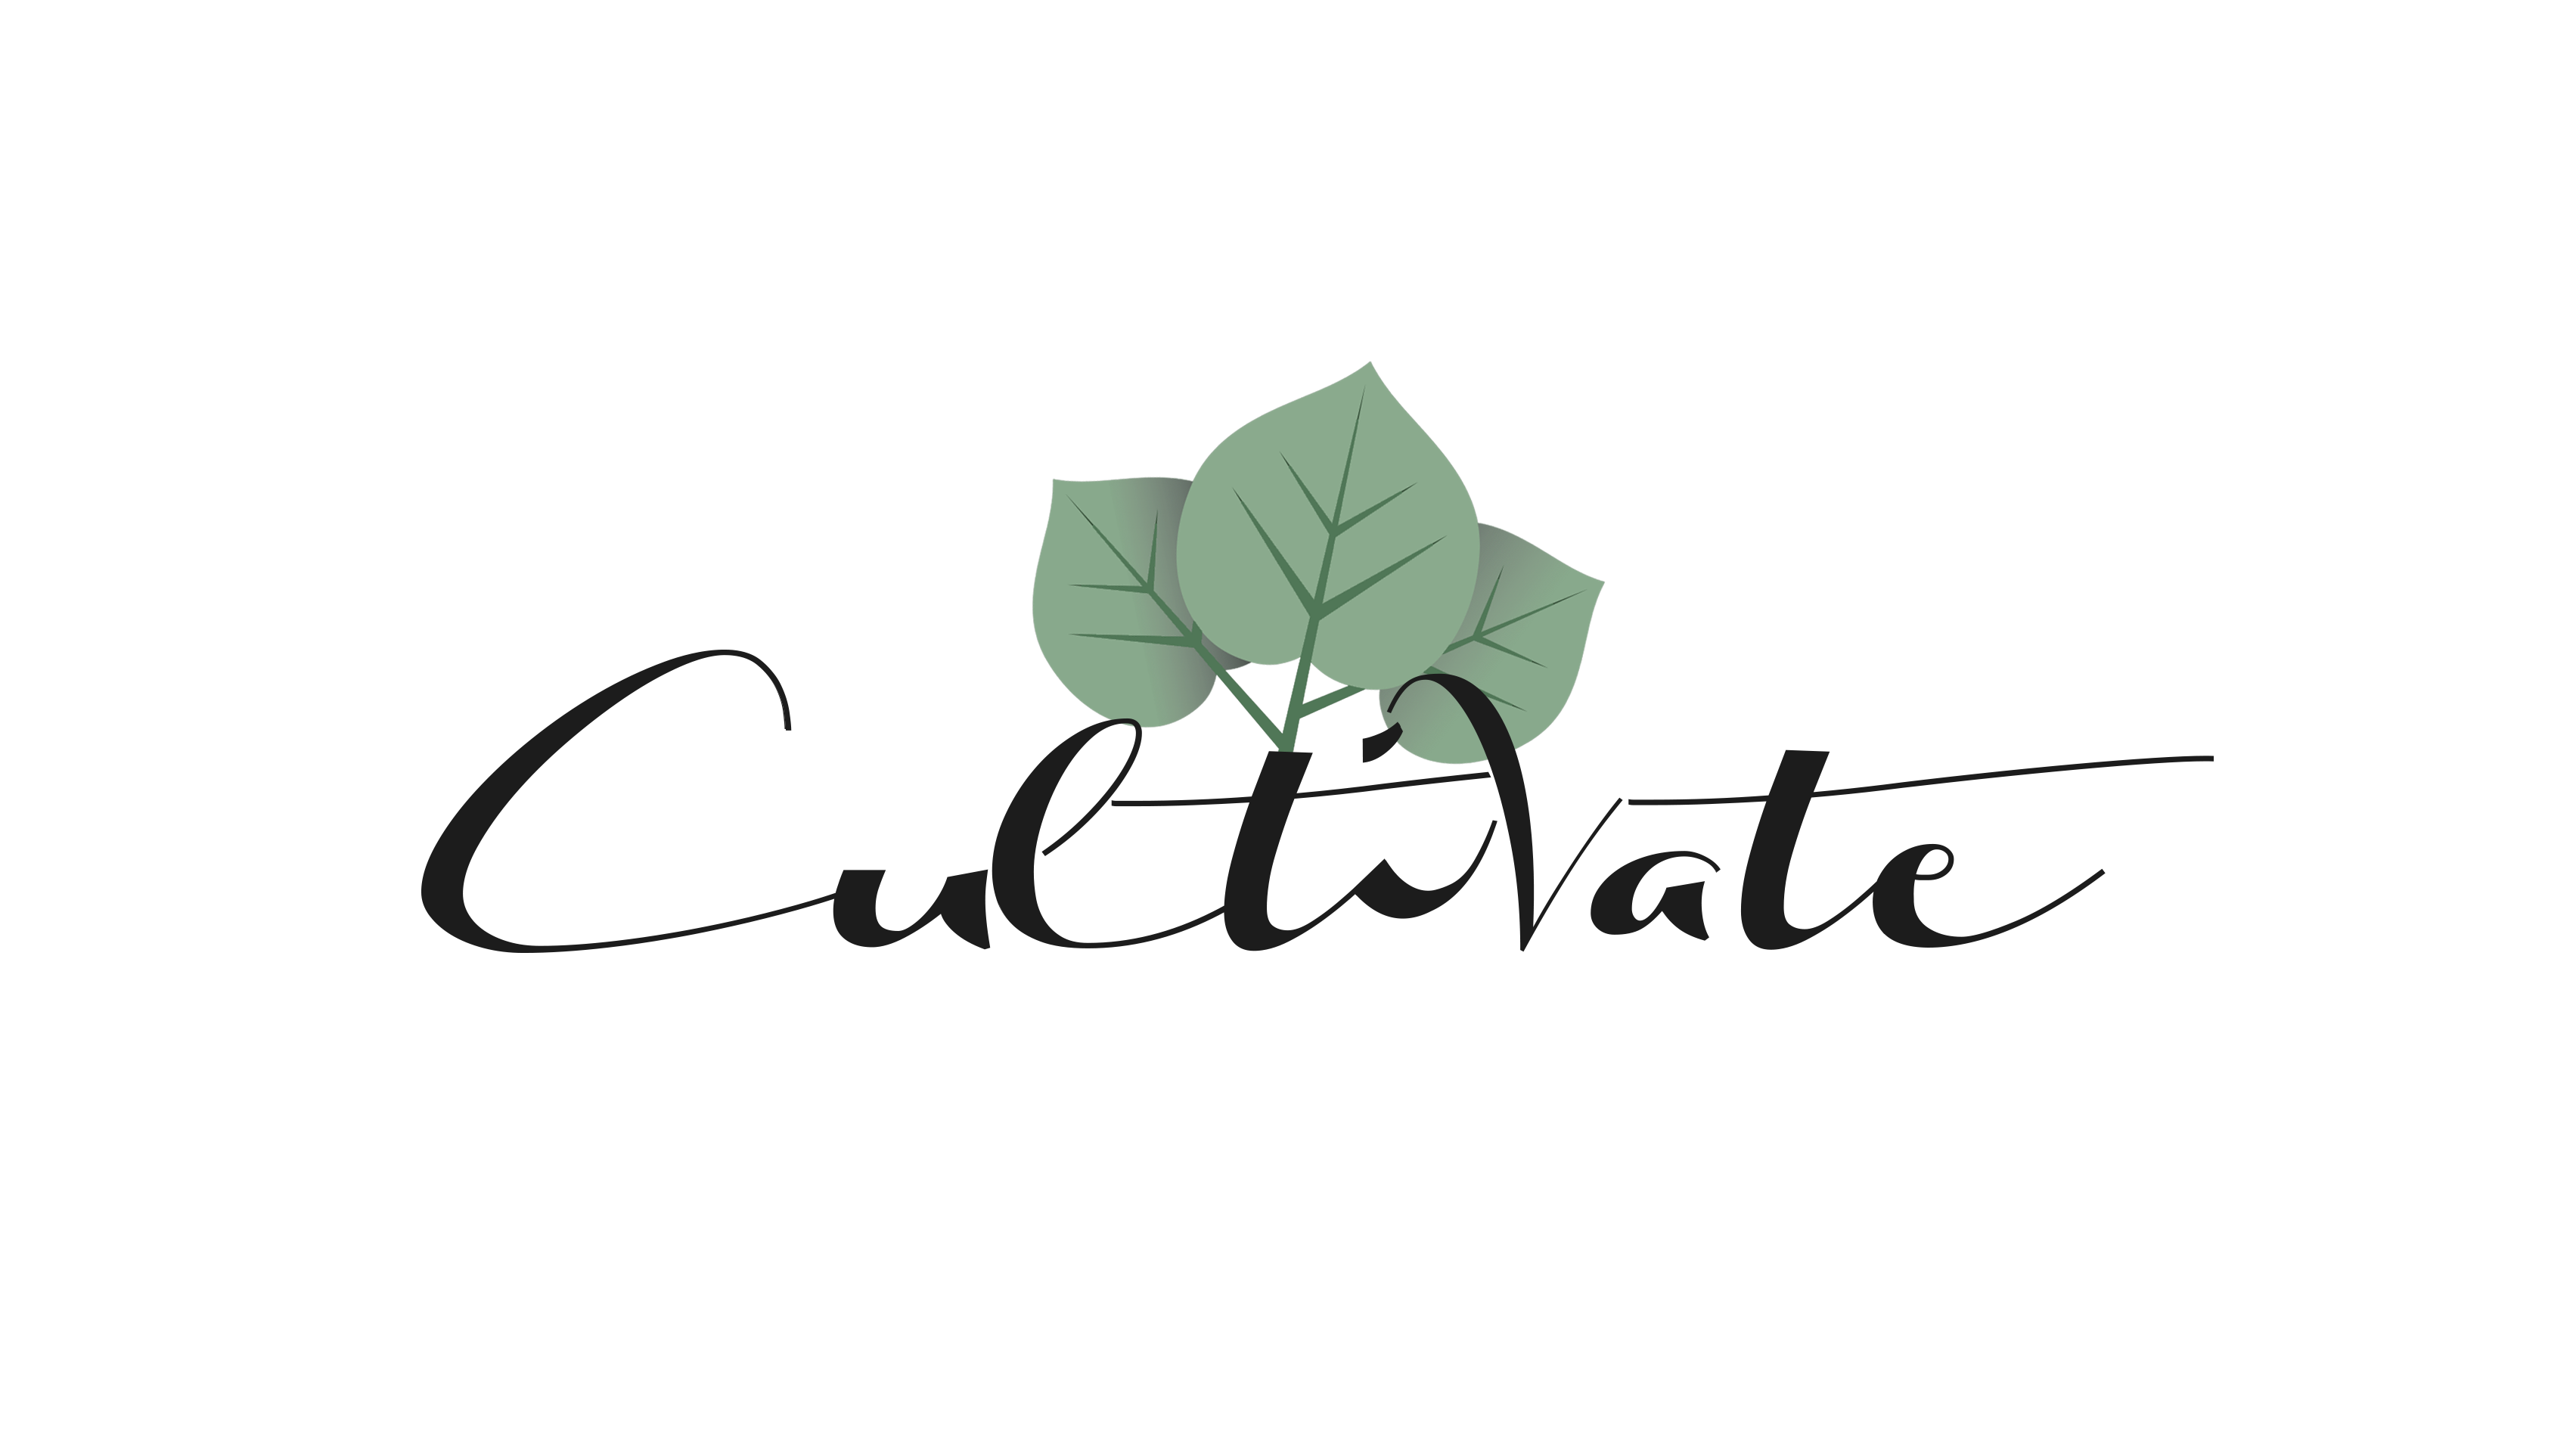 Cultivate Logo